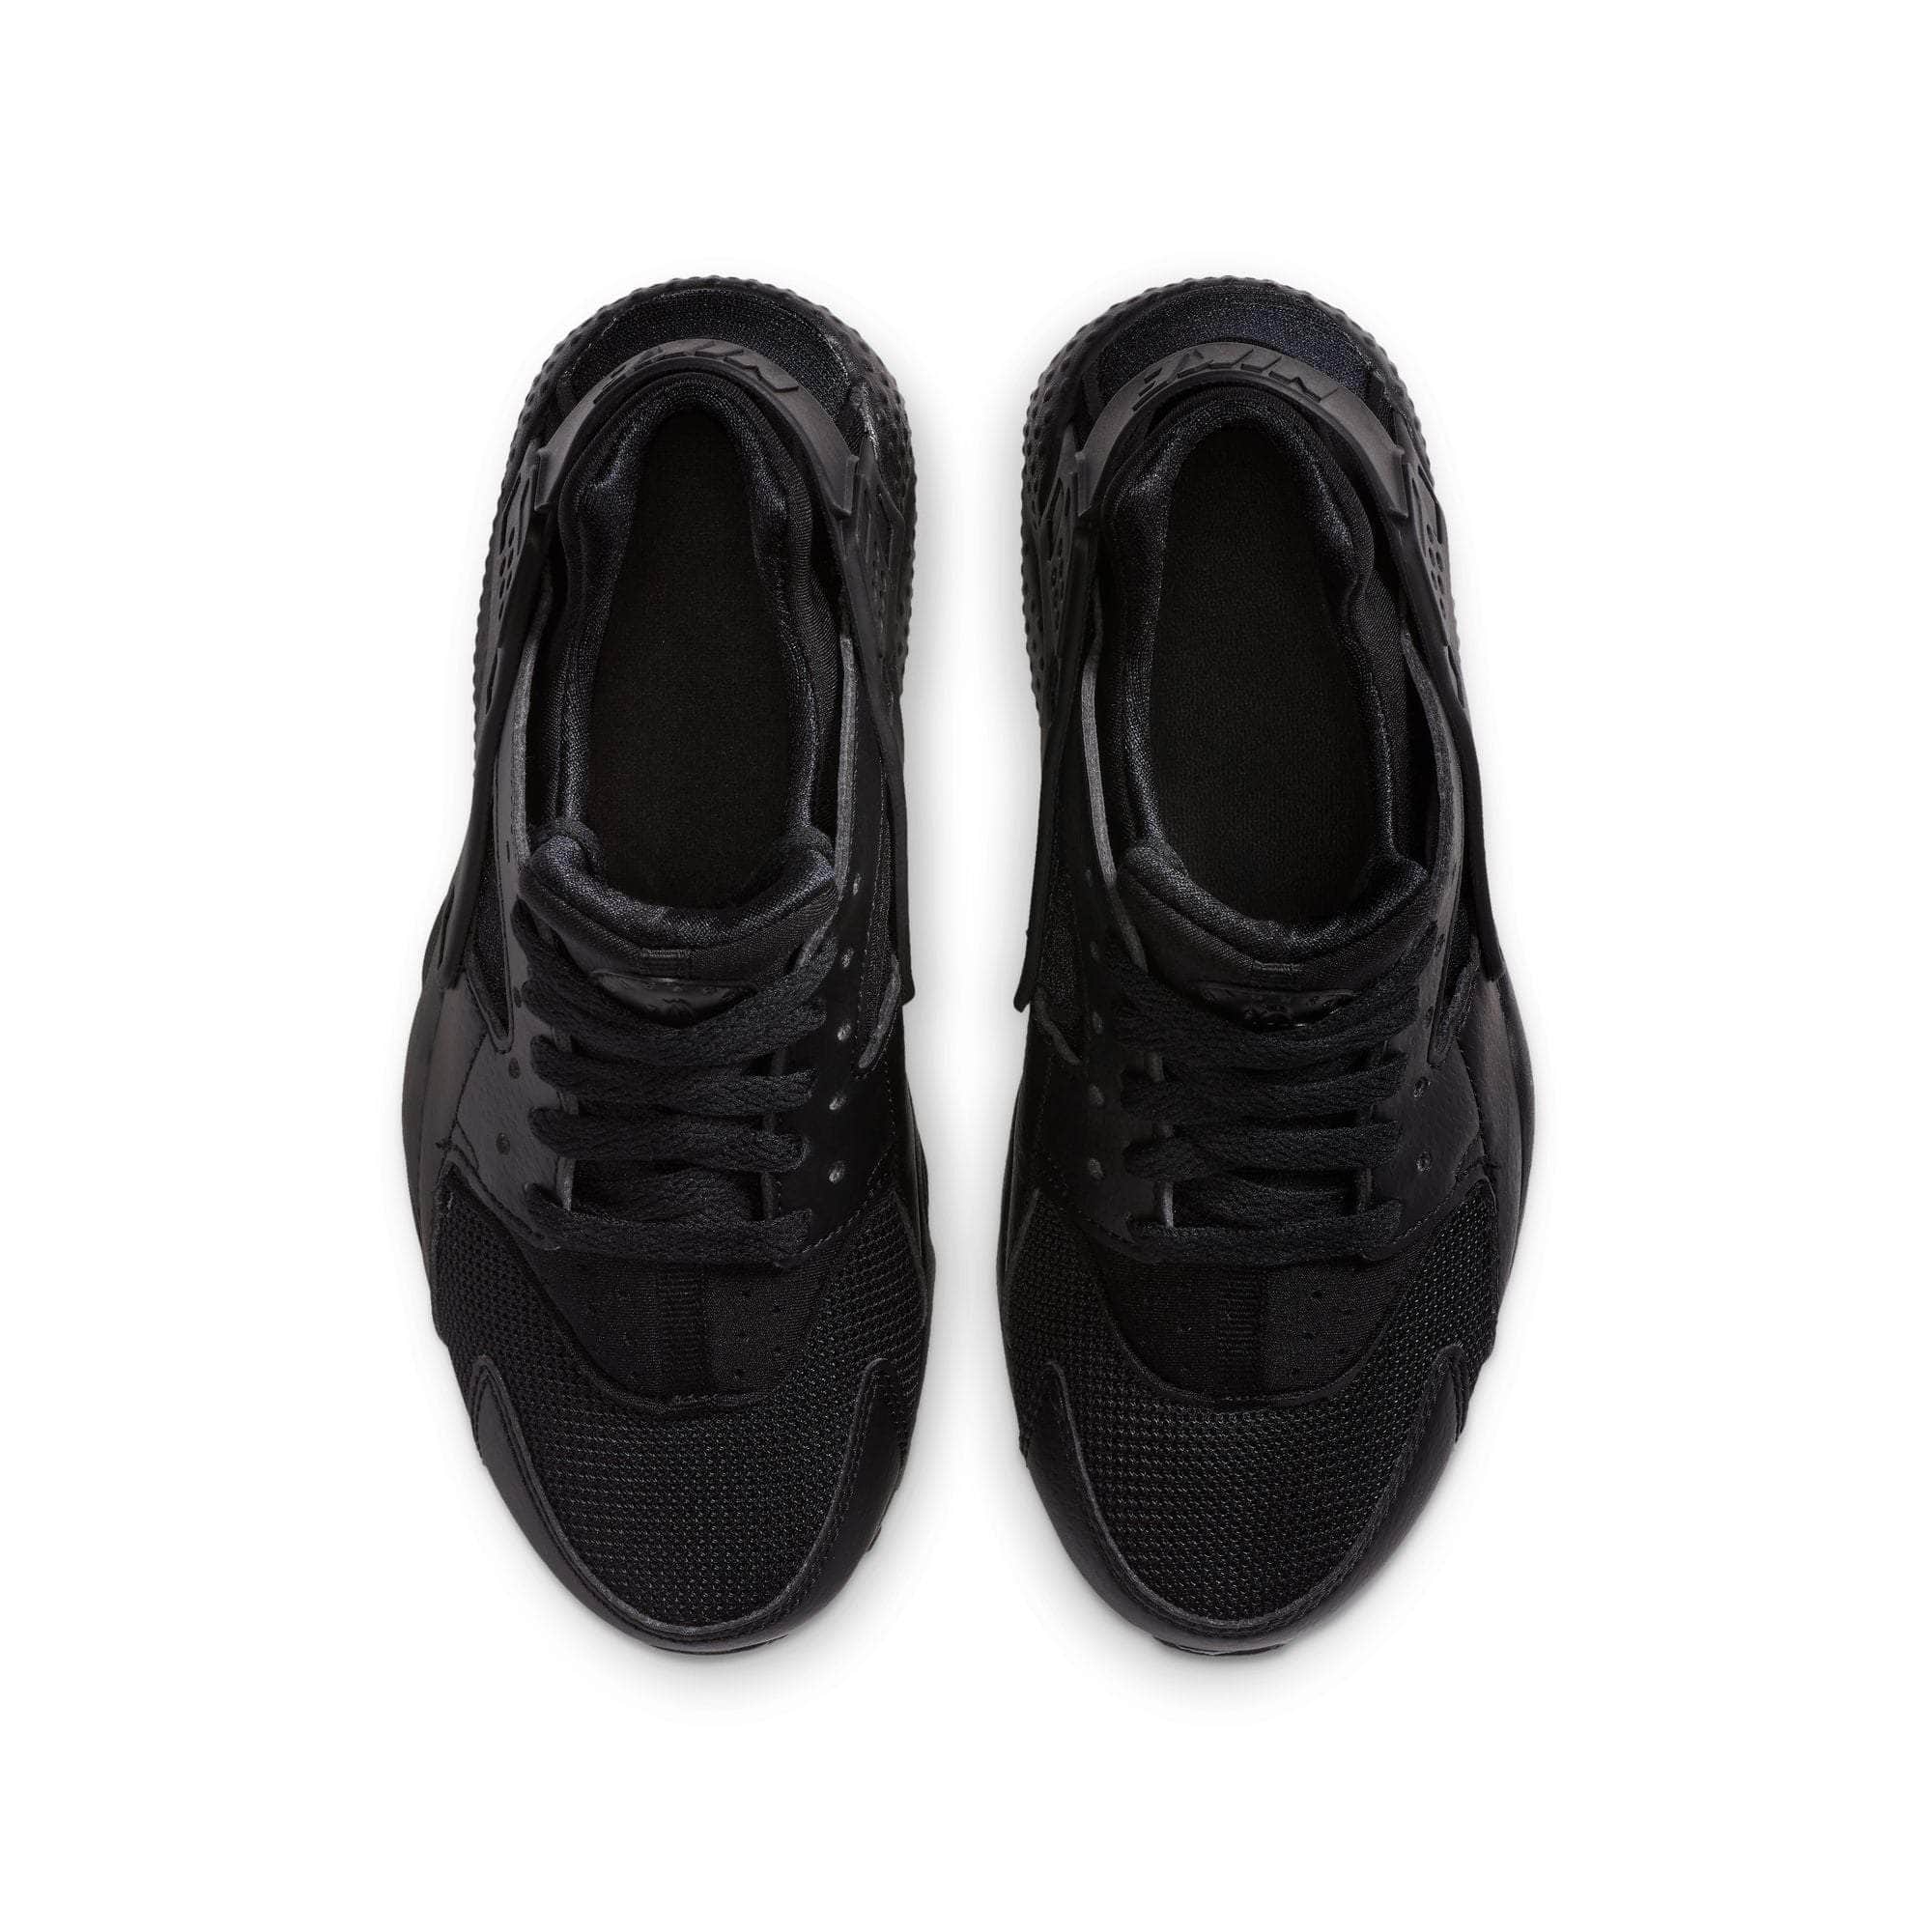 NIKE FOOTWEAR Nike Air Huarache Run "Triple Black" - Boy's GS